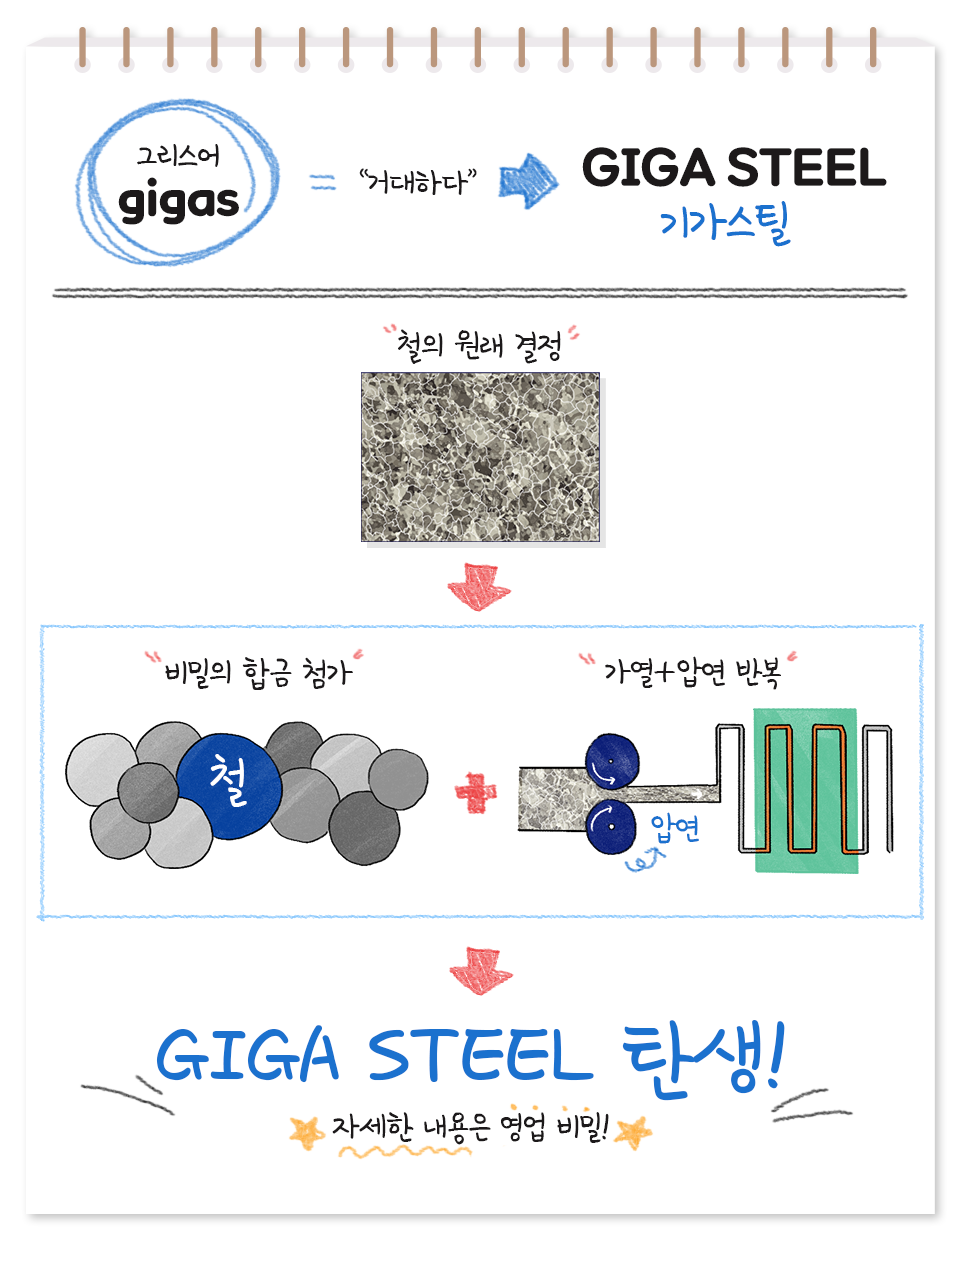 '거대하다'를 뜻하는 그리스어 gigas에서 탄생한 말, GIGA STEEL 기가스틸. 철의 원래 결정에 비밀의 합금을 첨가하고 가열과 압연 작업을 반복. GIGA STEEL 탄생! 자세한 내용은 영업 비밀!